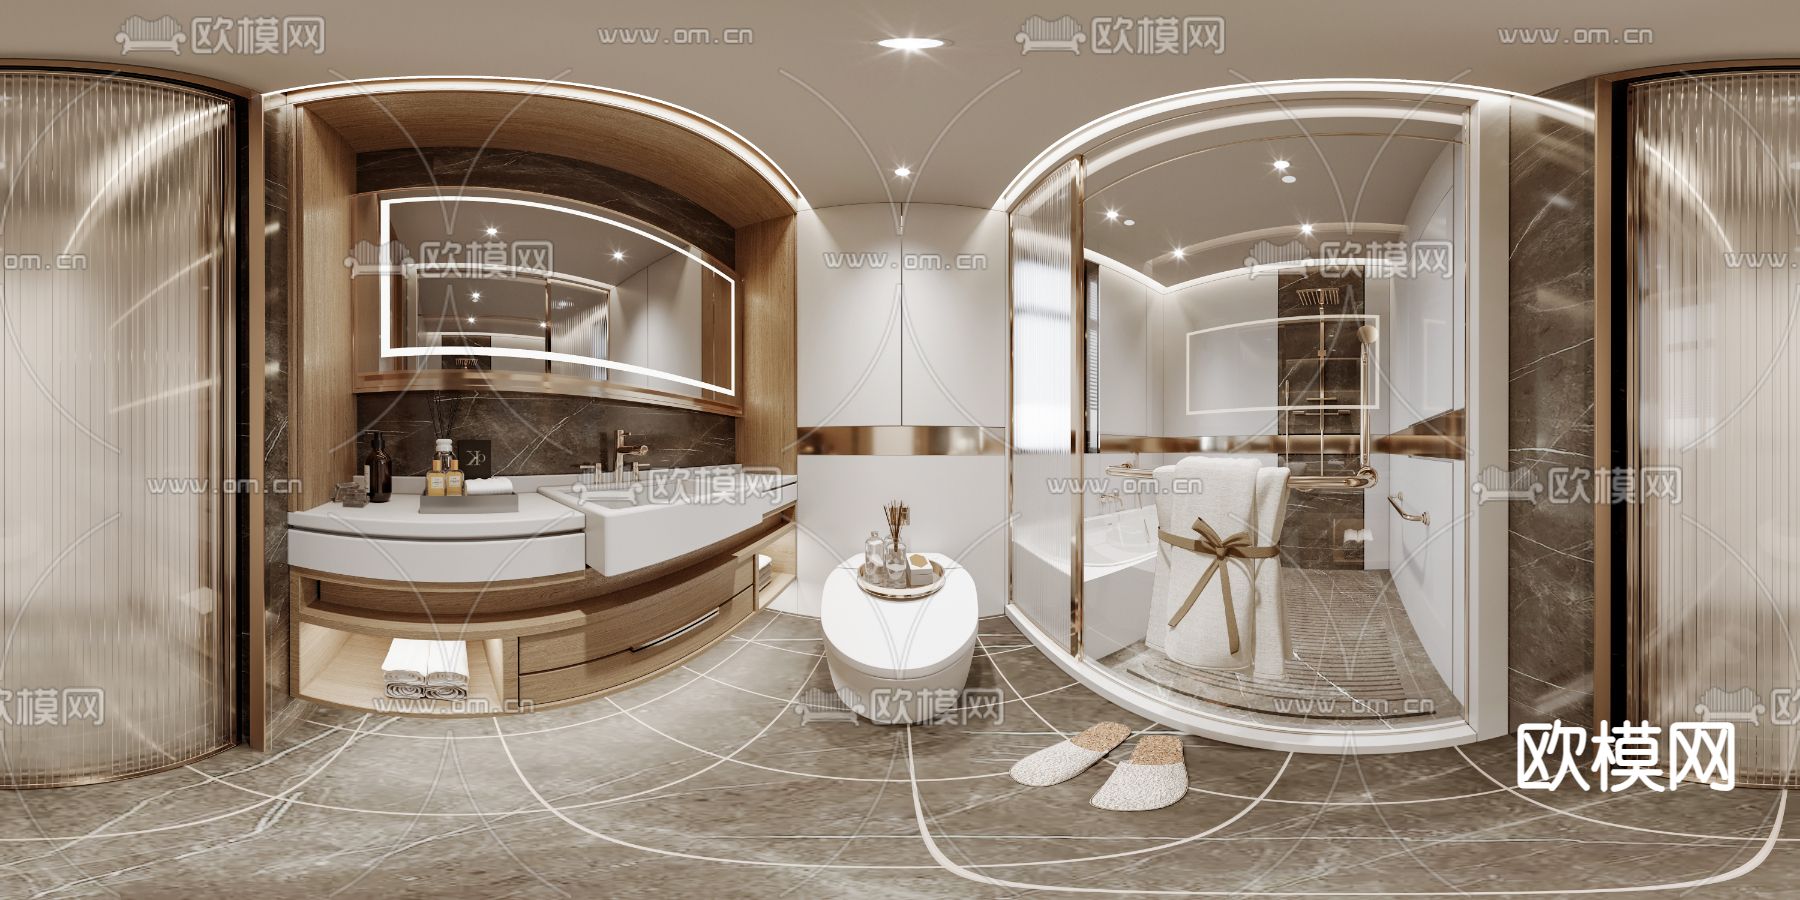 现代卫生间 浴室cr全景3d模型